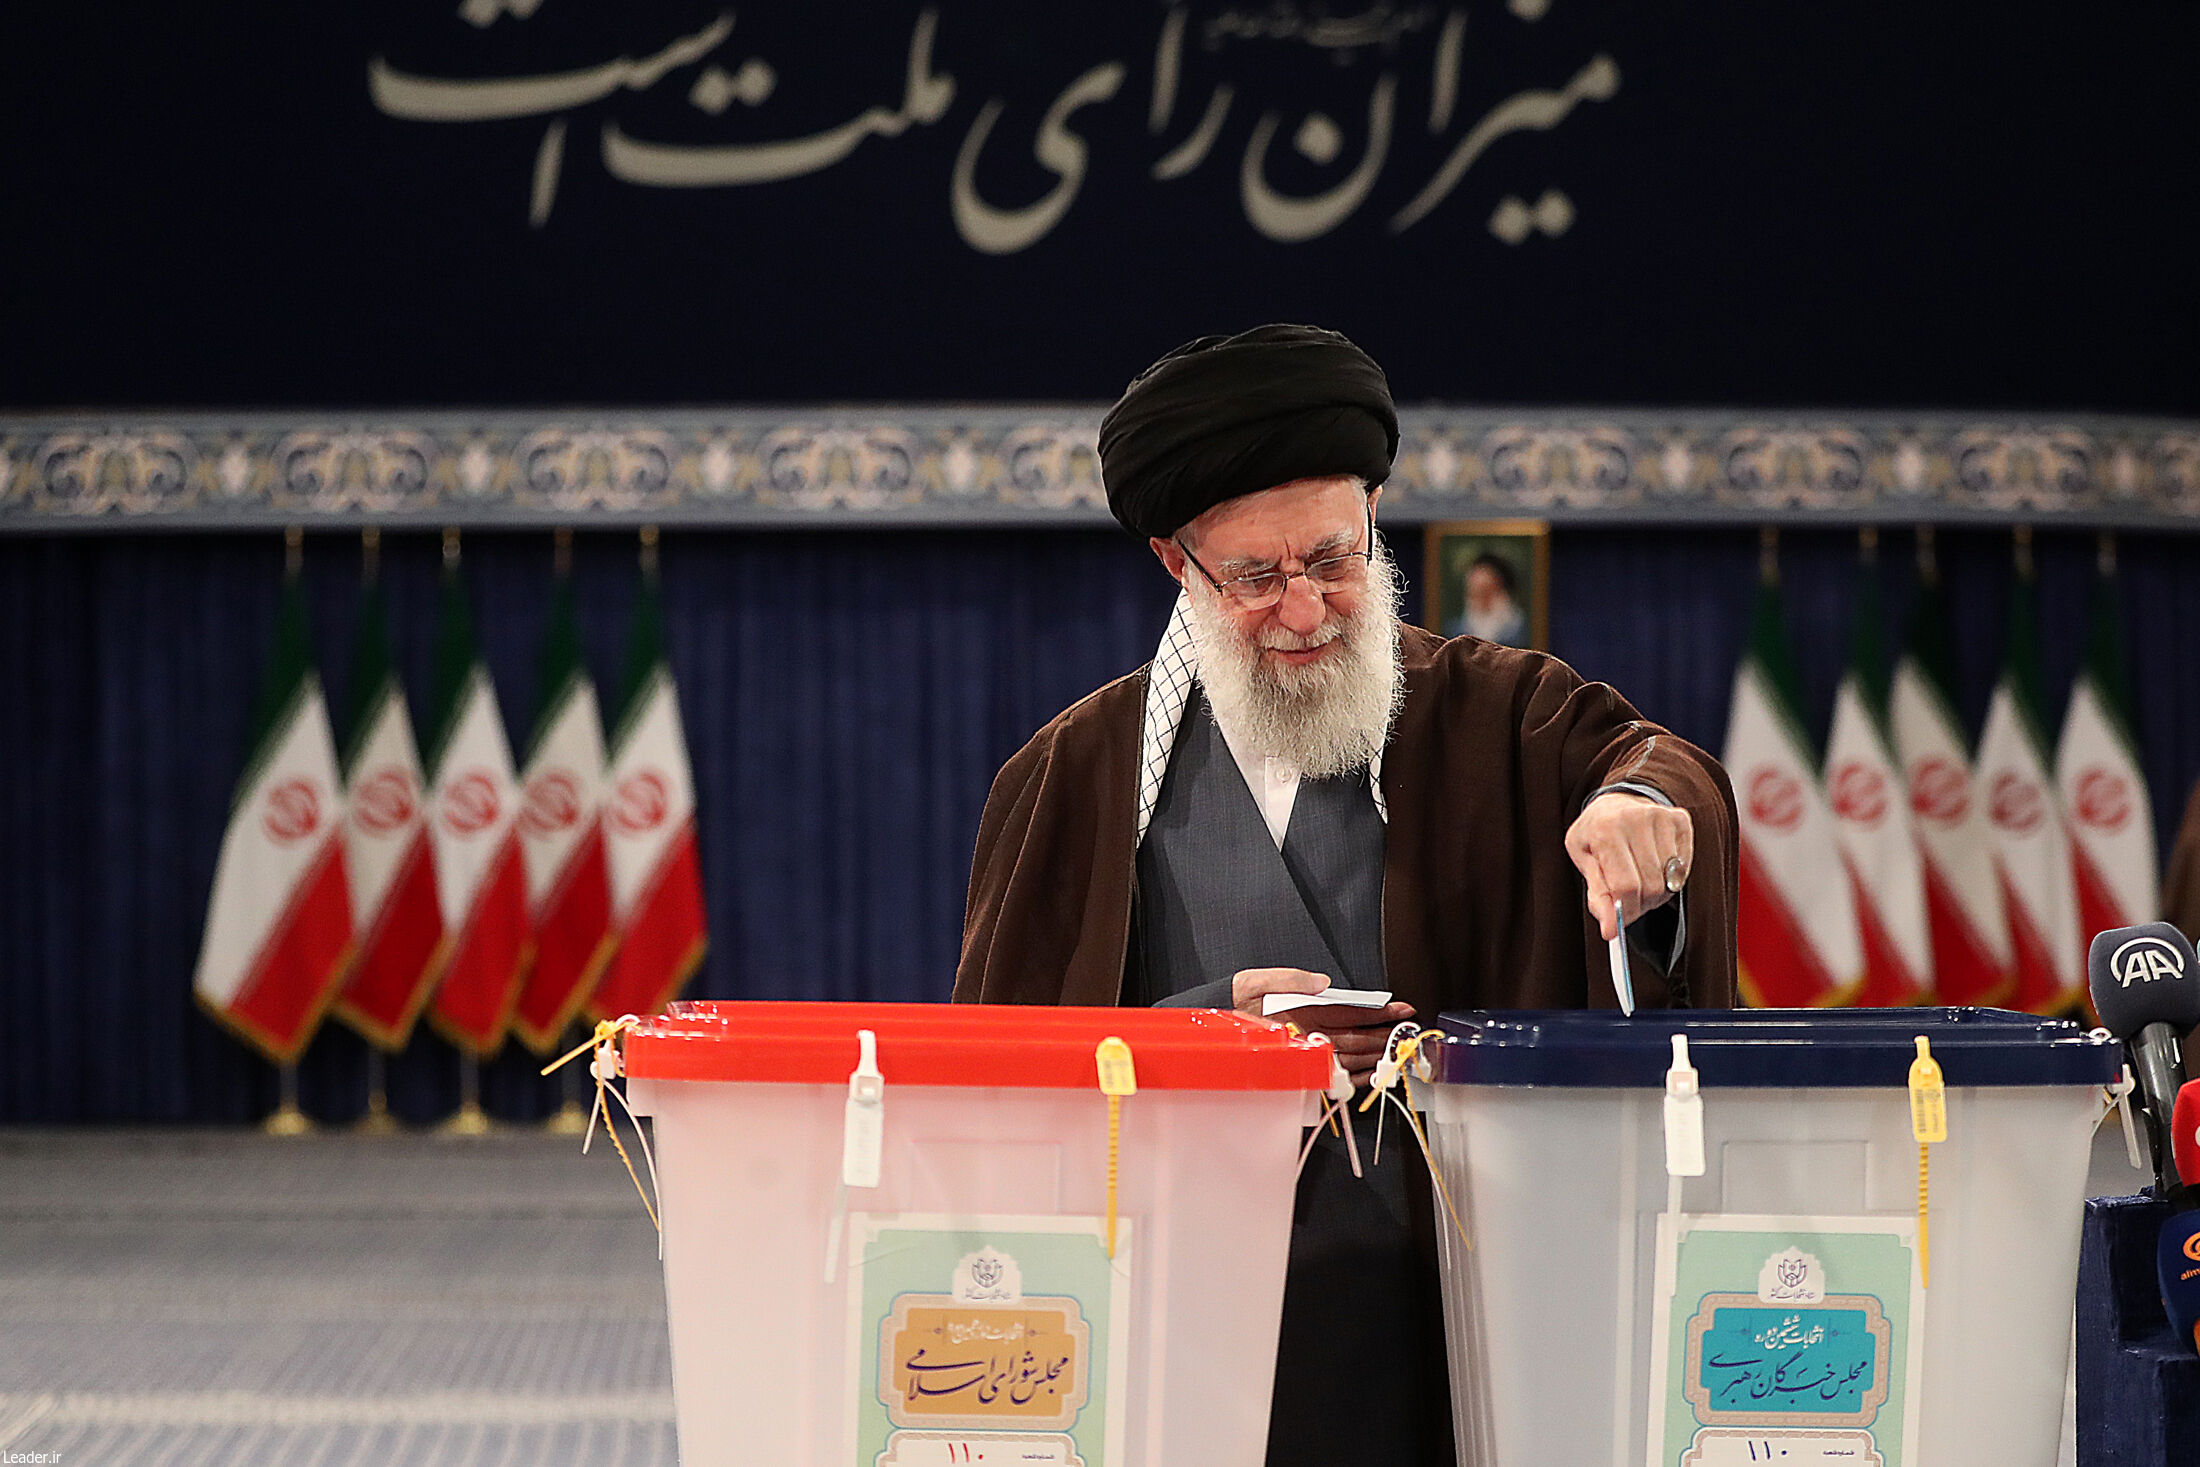 رهبر انقلاب اسلامی رای خود را به صندوق انداختند + عکس